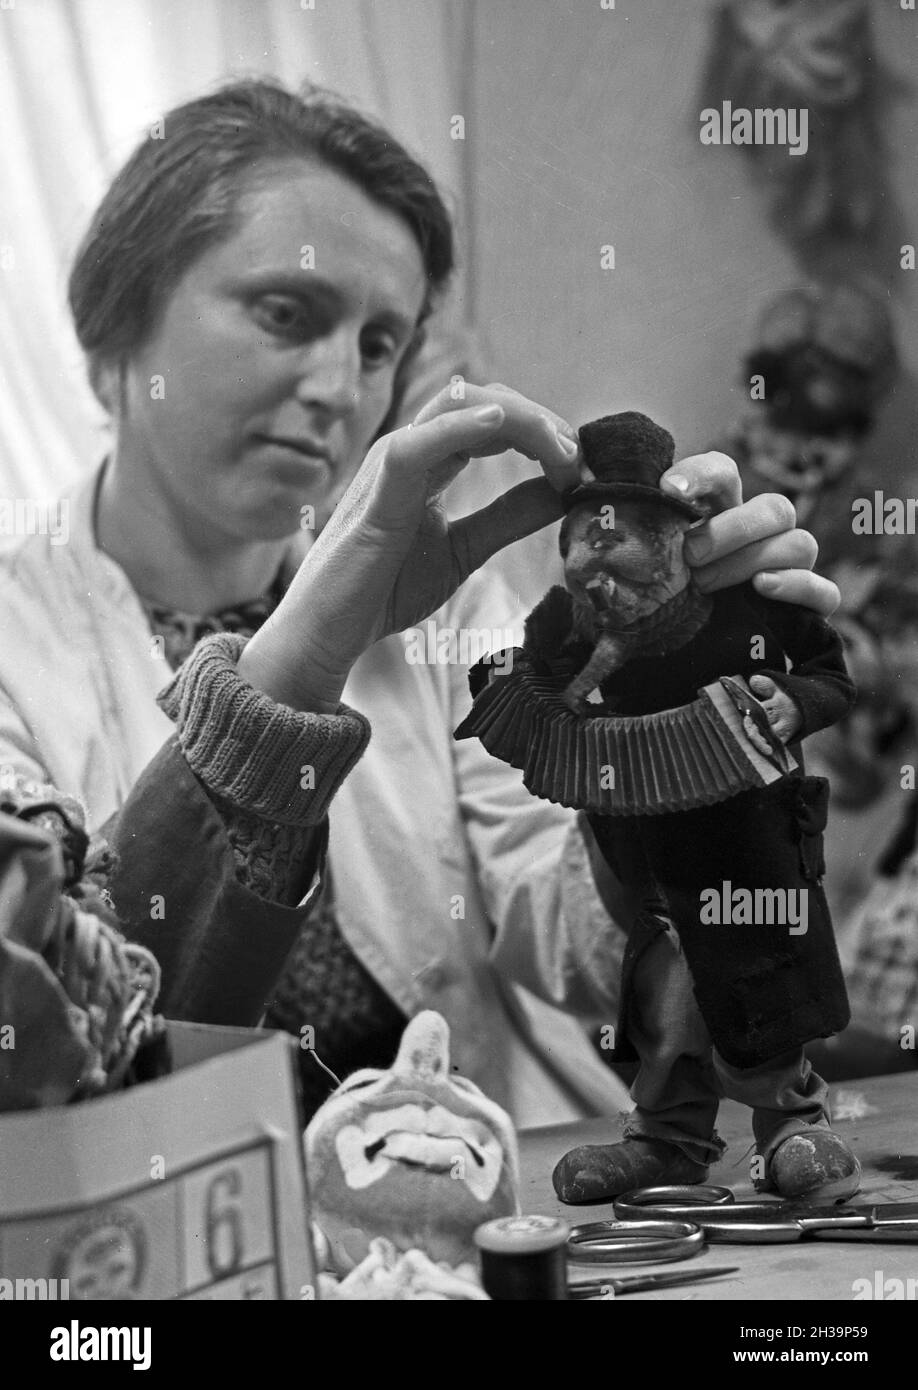 Aus Lumen werden Puppen hergestellt, die in einer Puppenstadt als Freilichtmuseum angezeigt werden, Deutschland 1930er Jahre. Puppen aus Lumpen werden in einer Open-Air-Ausstellung, Deutschland 1930er Jahre, gezeigt. Stockfoto